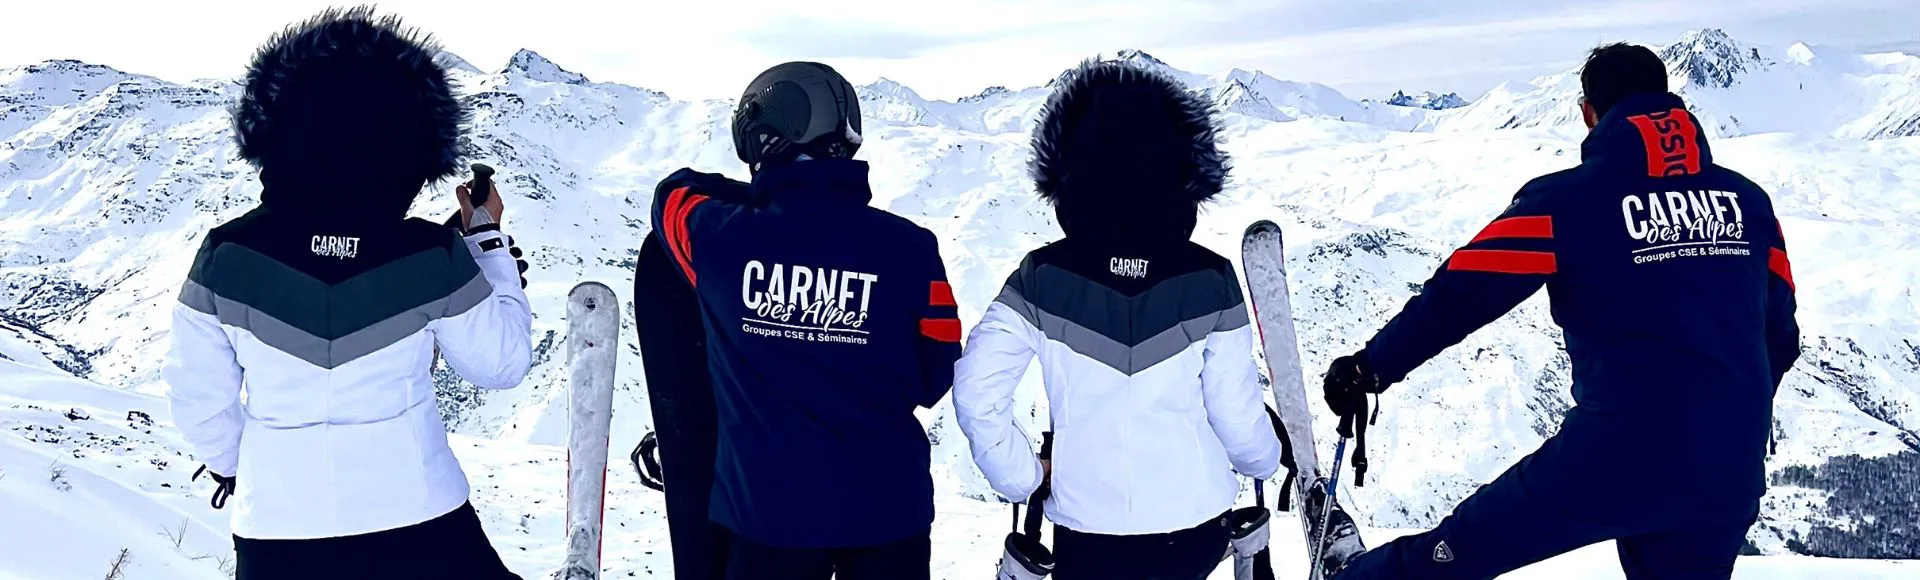 Equipe de Carnet des Alpes en team-building avec une activité ski.